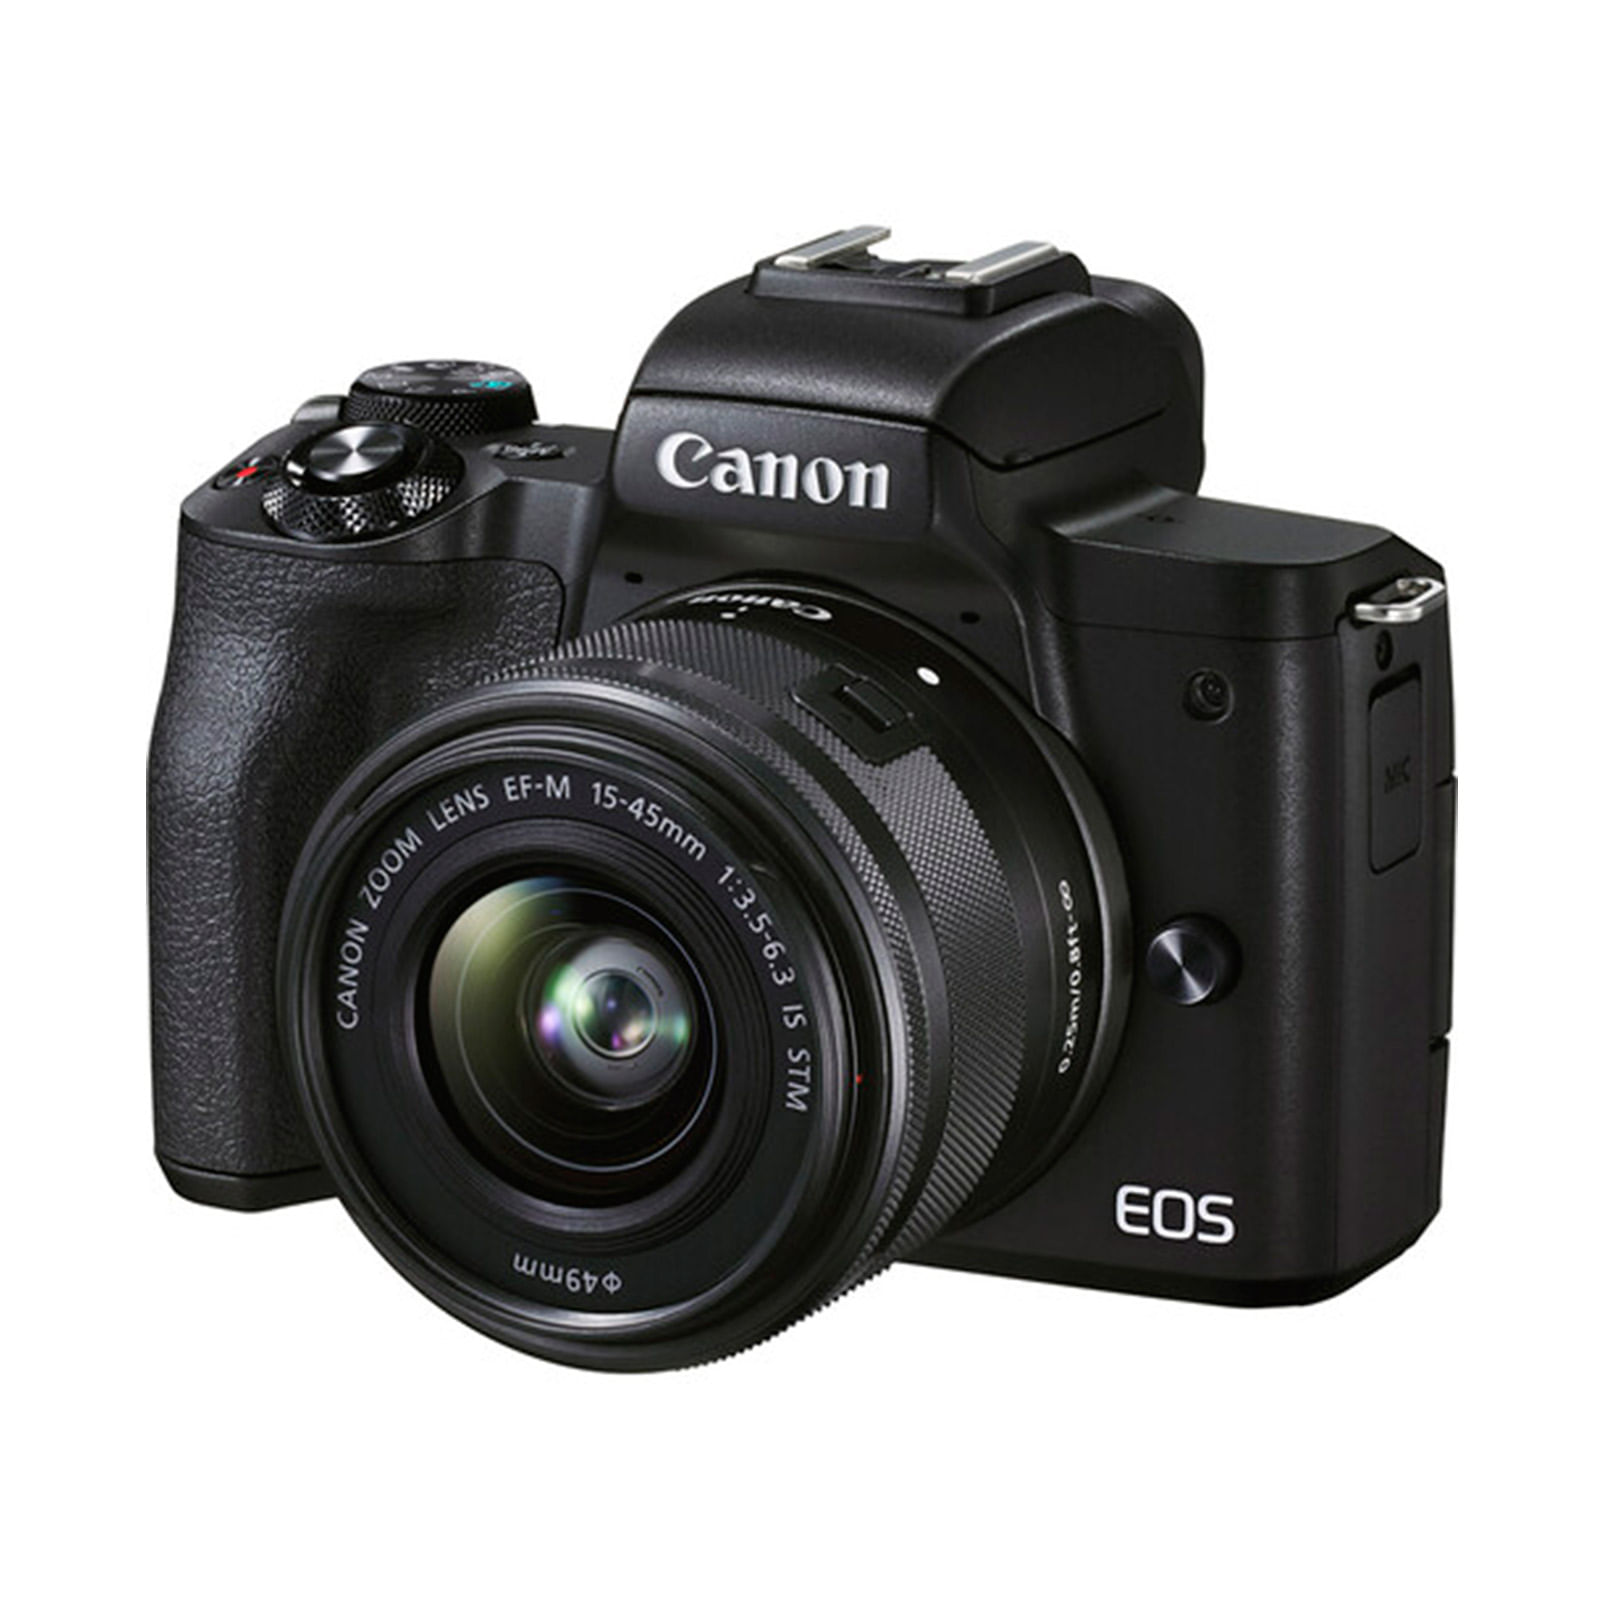 Censo nacional carro famélico Cámara digital negra Canon EOS M50 Mark II 15-45 mm de 24.1 mp